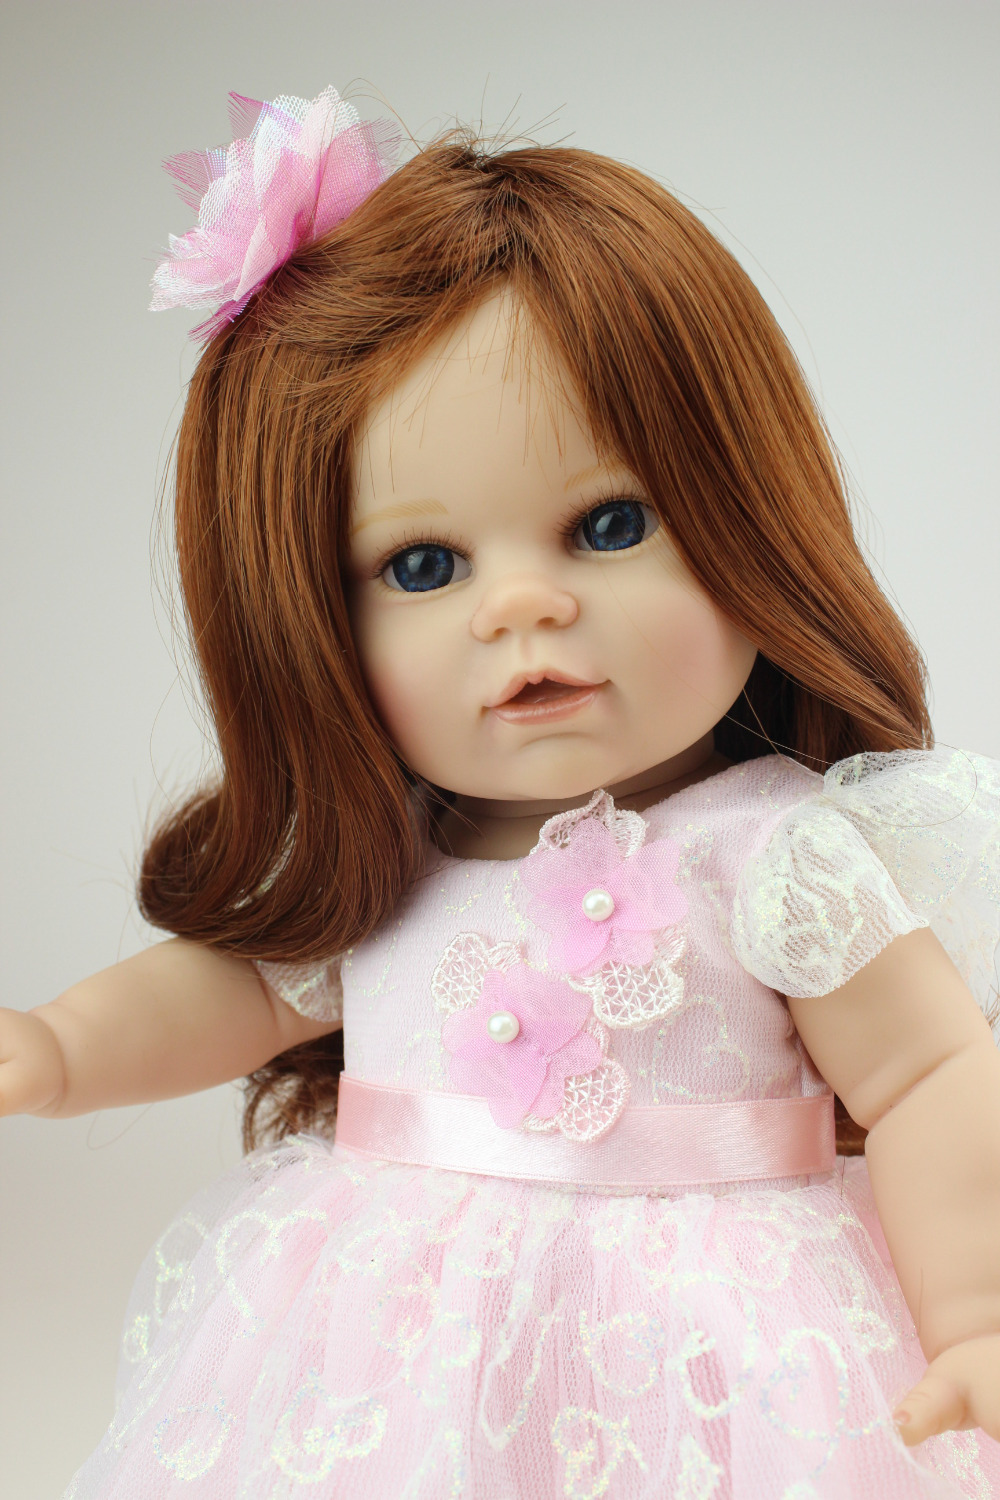 New girl dolls toys 16